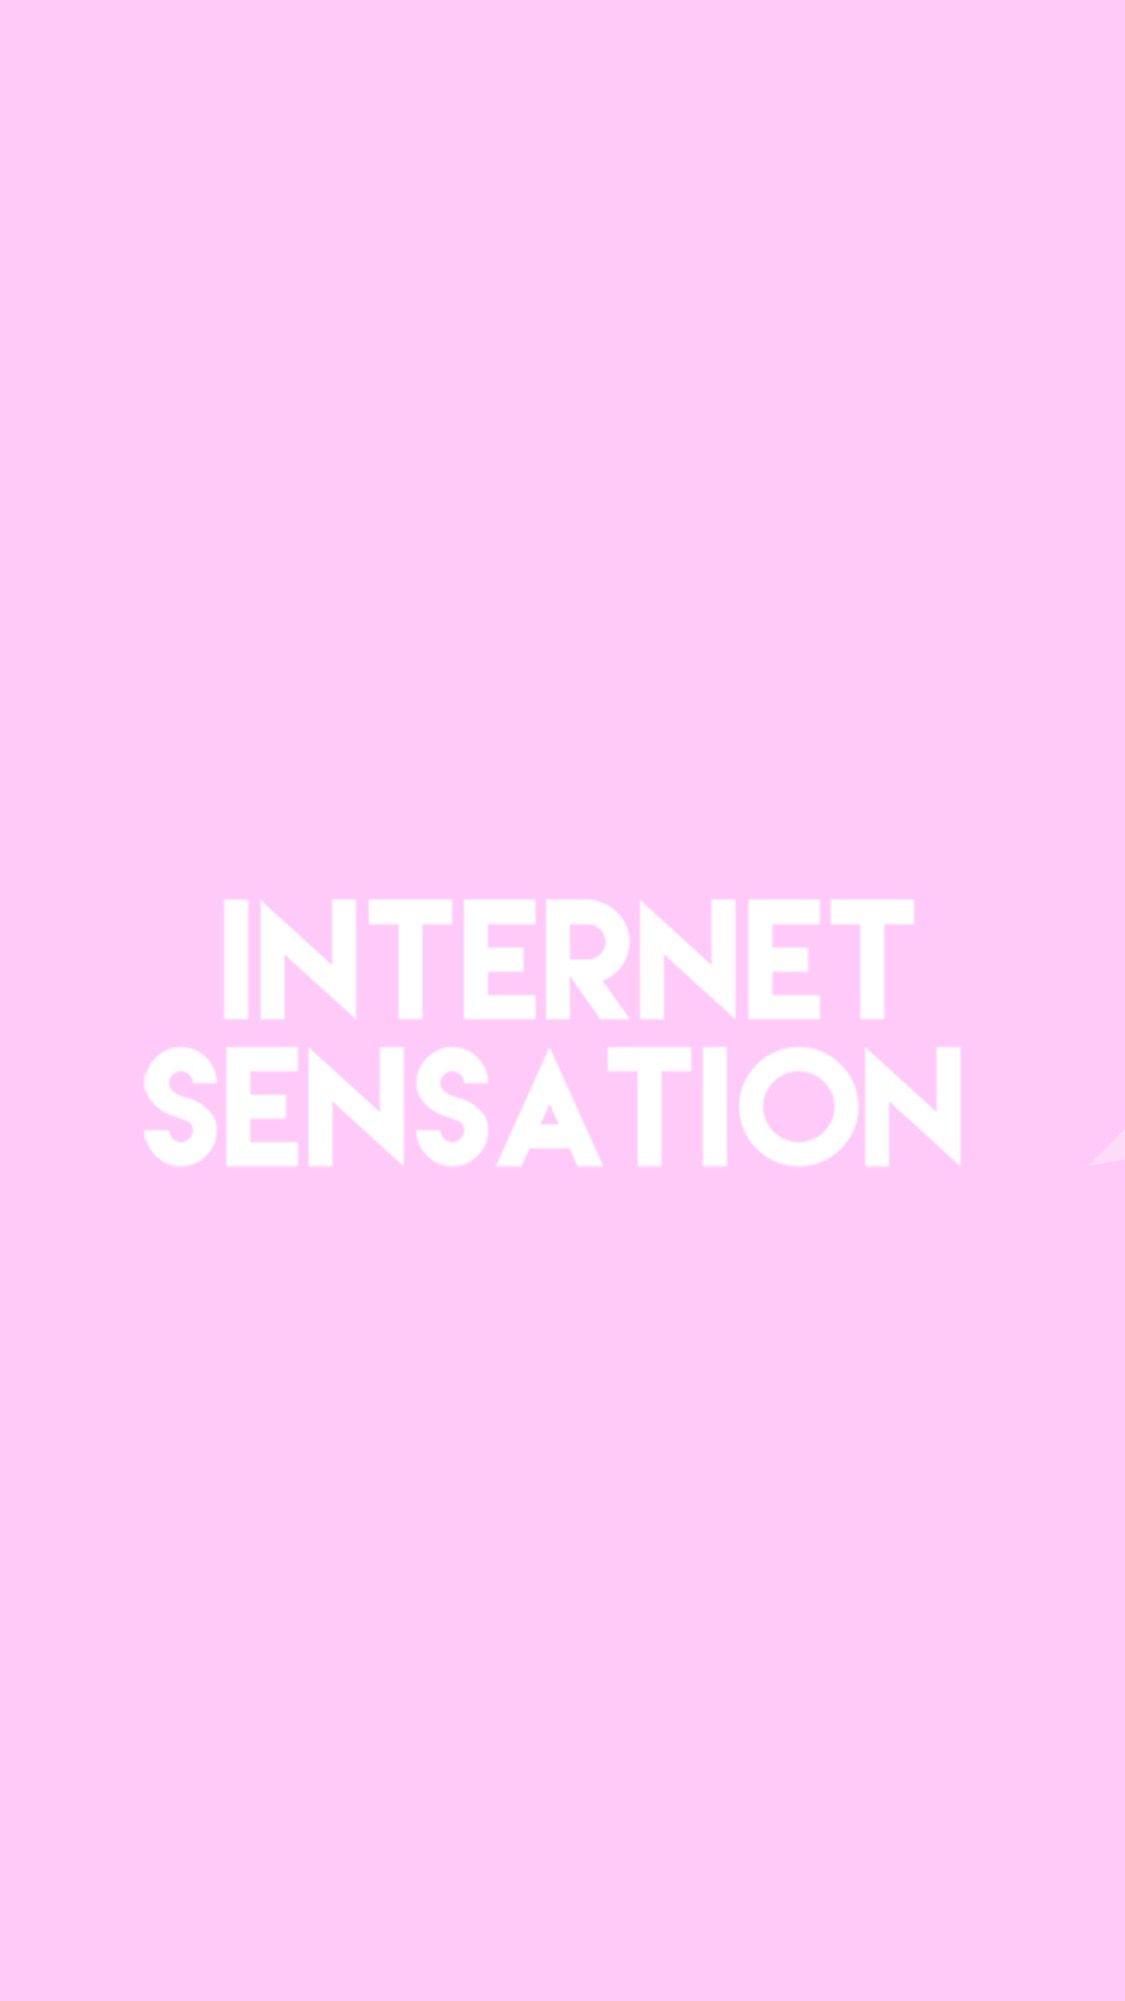 Imallexx Intersensation Pink R Wallpaper Baby